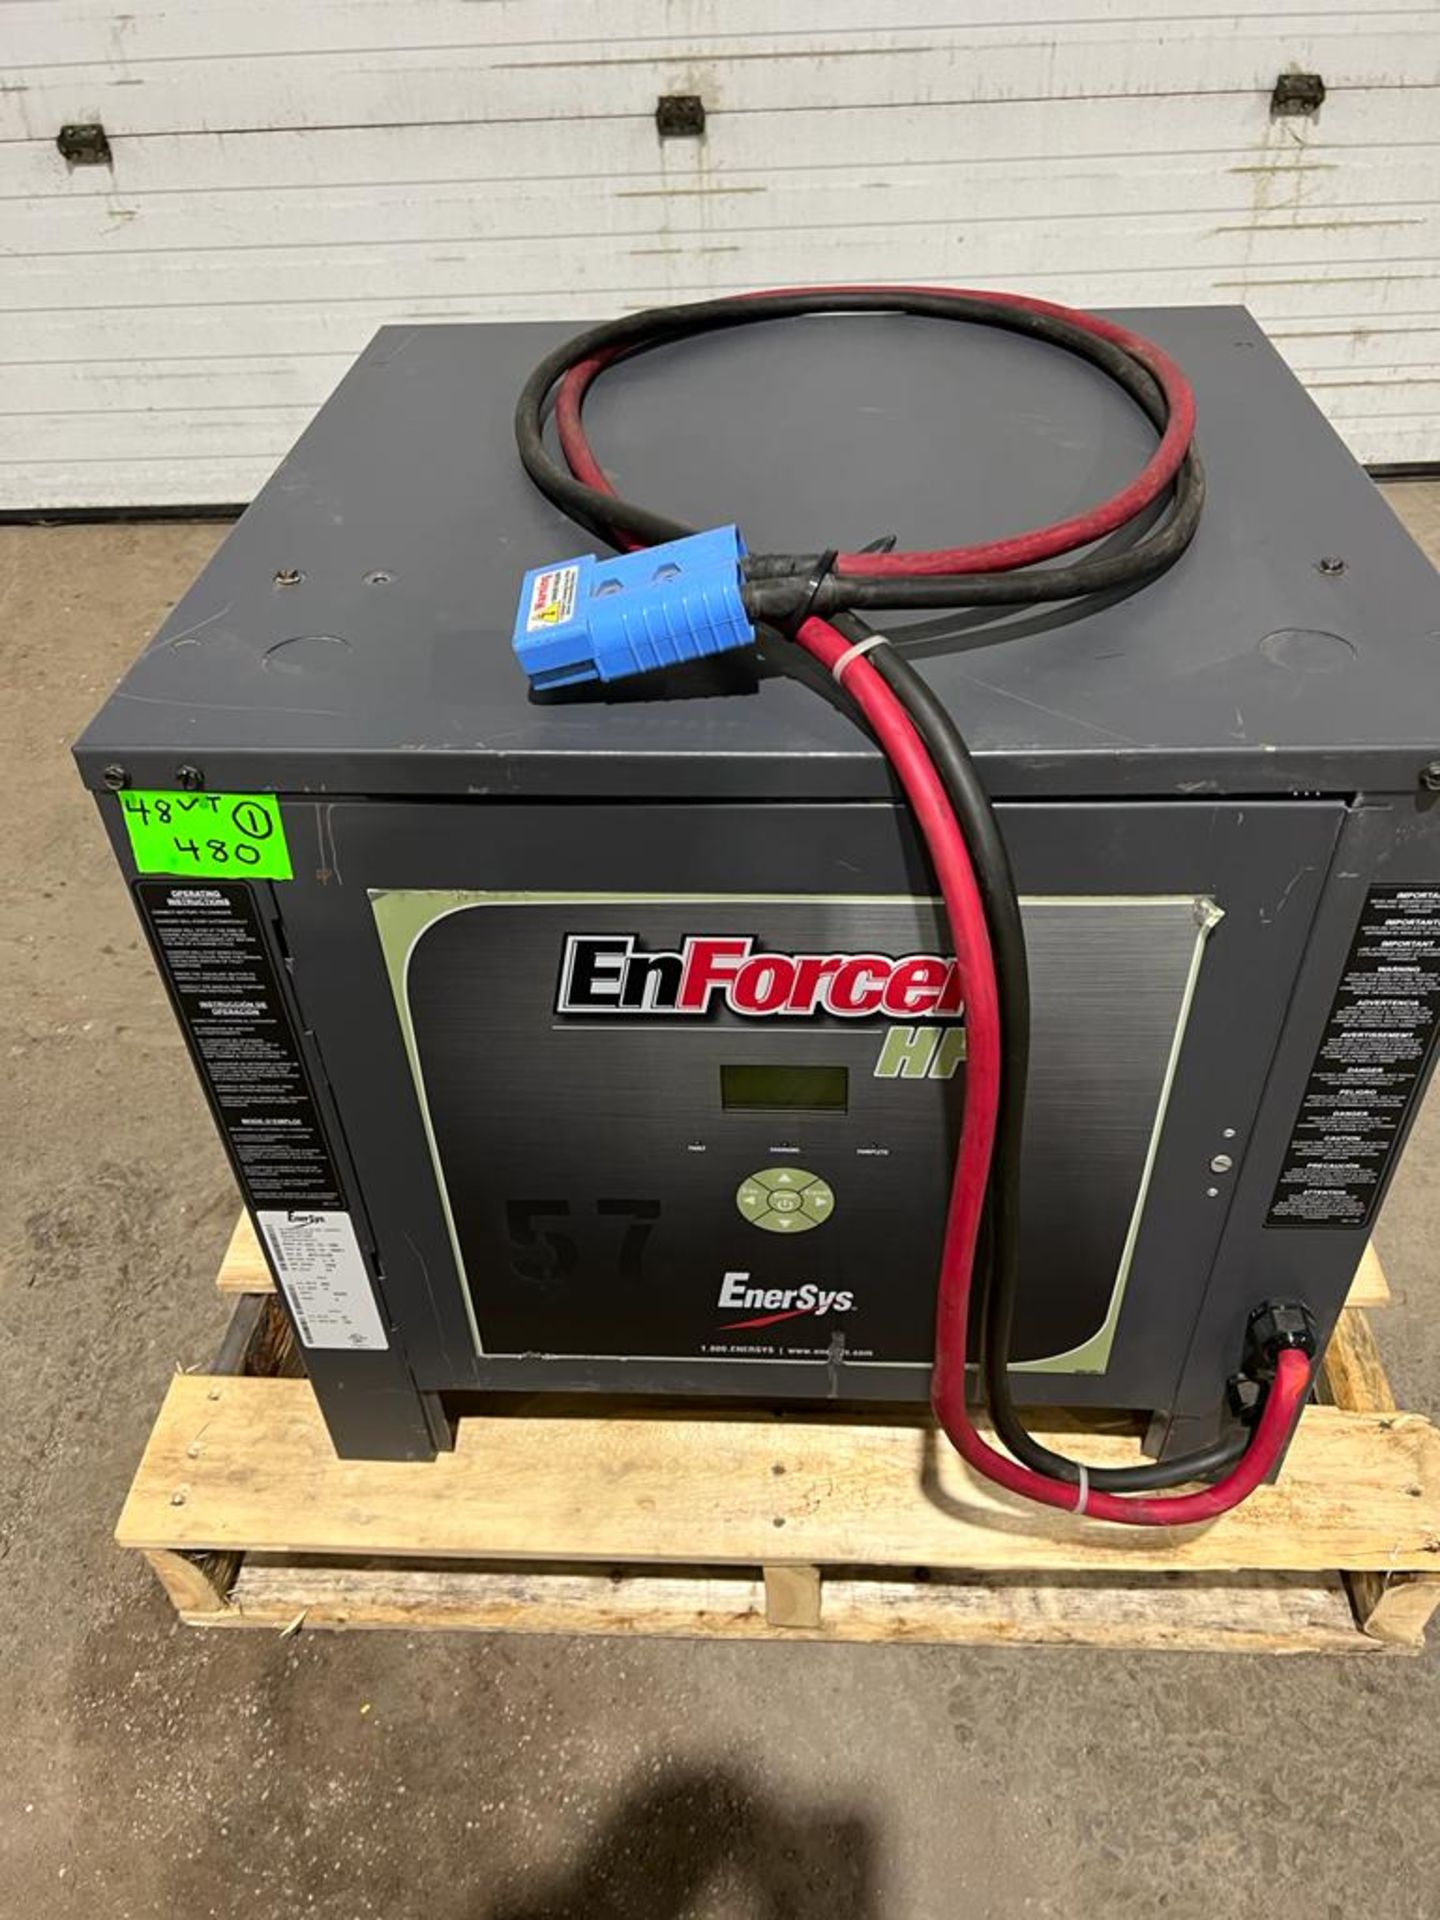 EnForcer Enersys Forklift Battery Charger 48V Unit - 480V 3 phase input